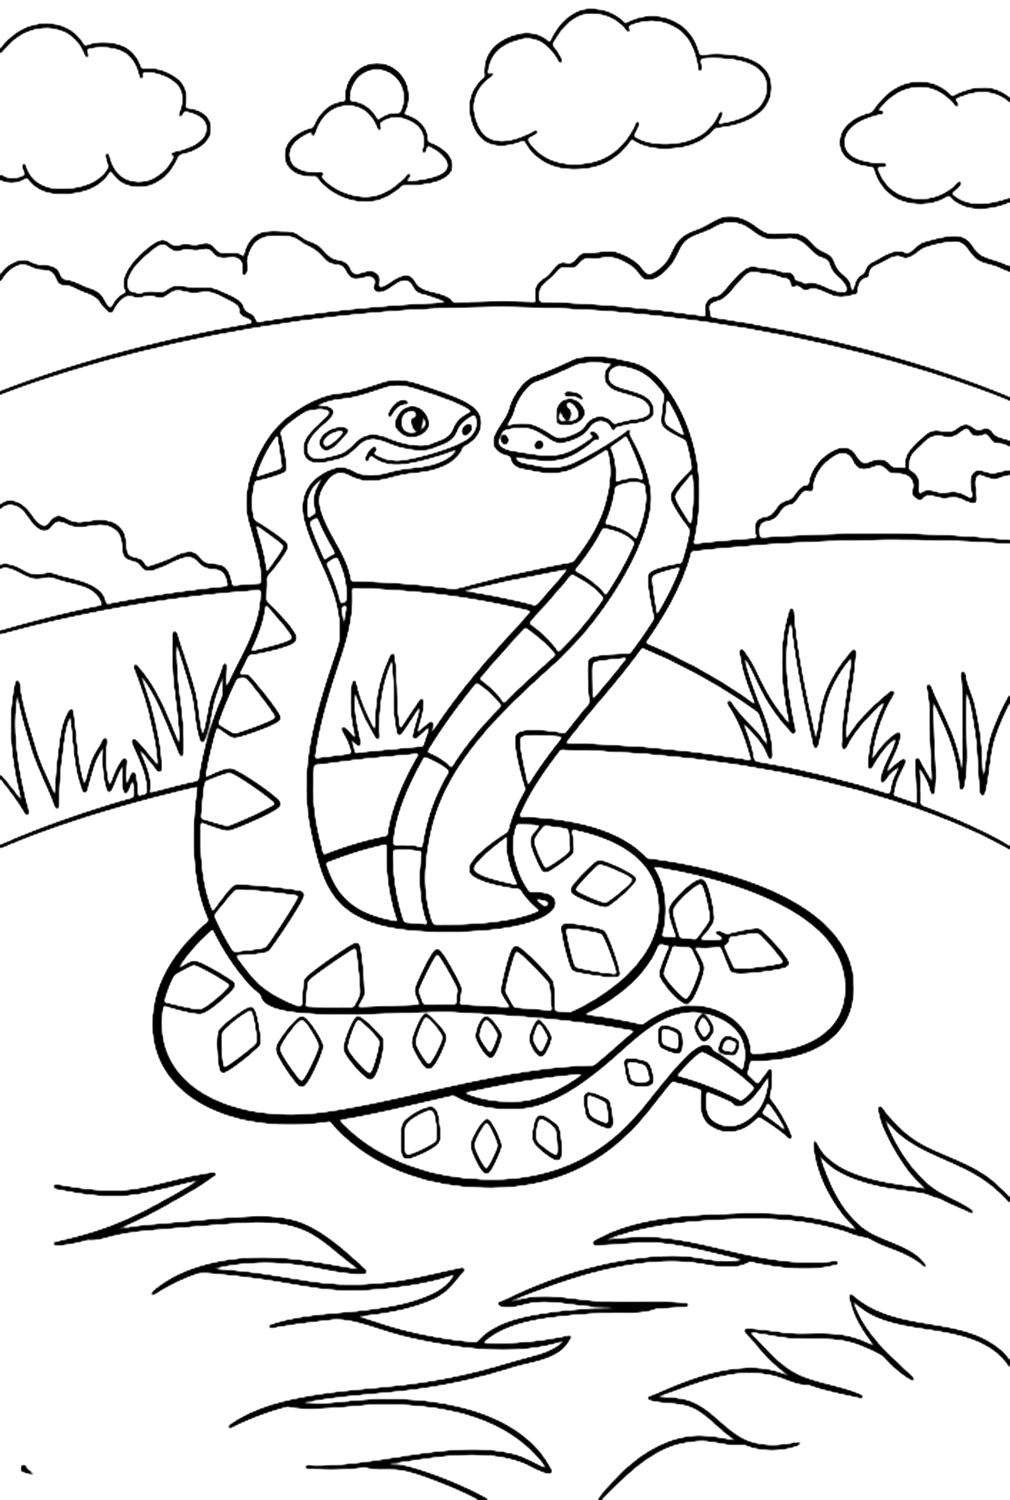 Изображение Python для раскрашивания из Python